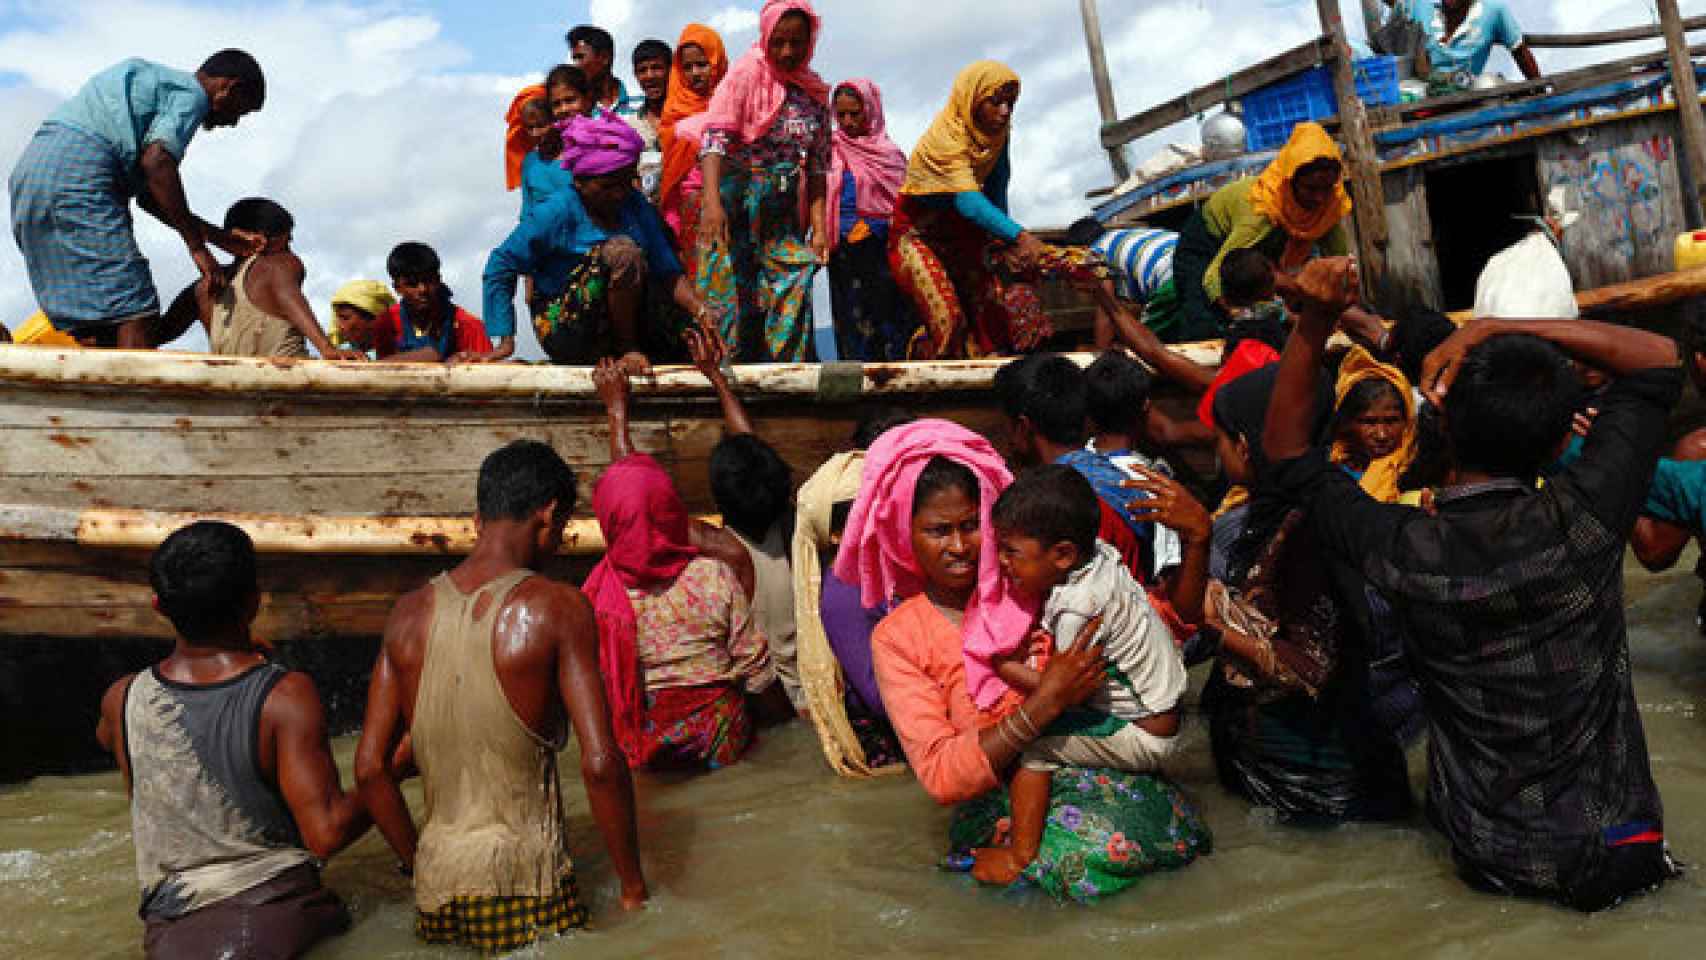 Los rohingyás bajan del barco tras cruzar la frontera.